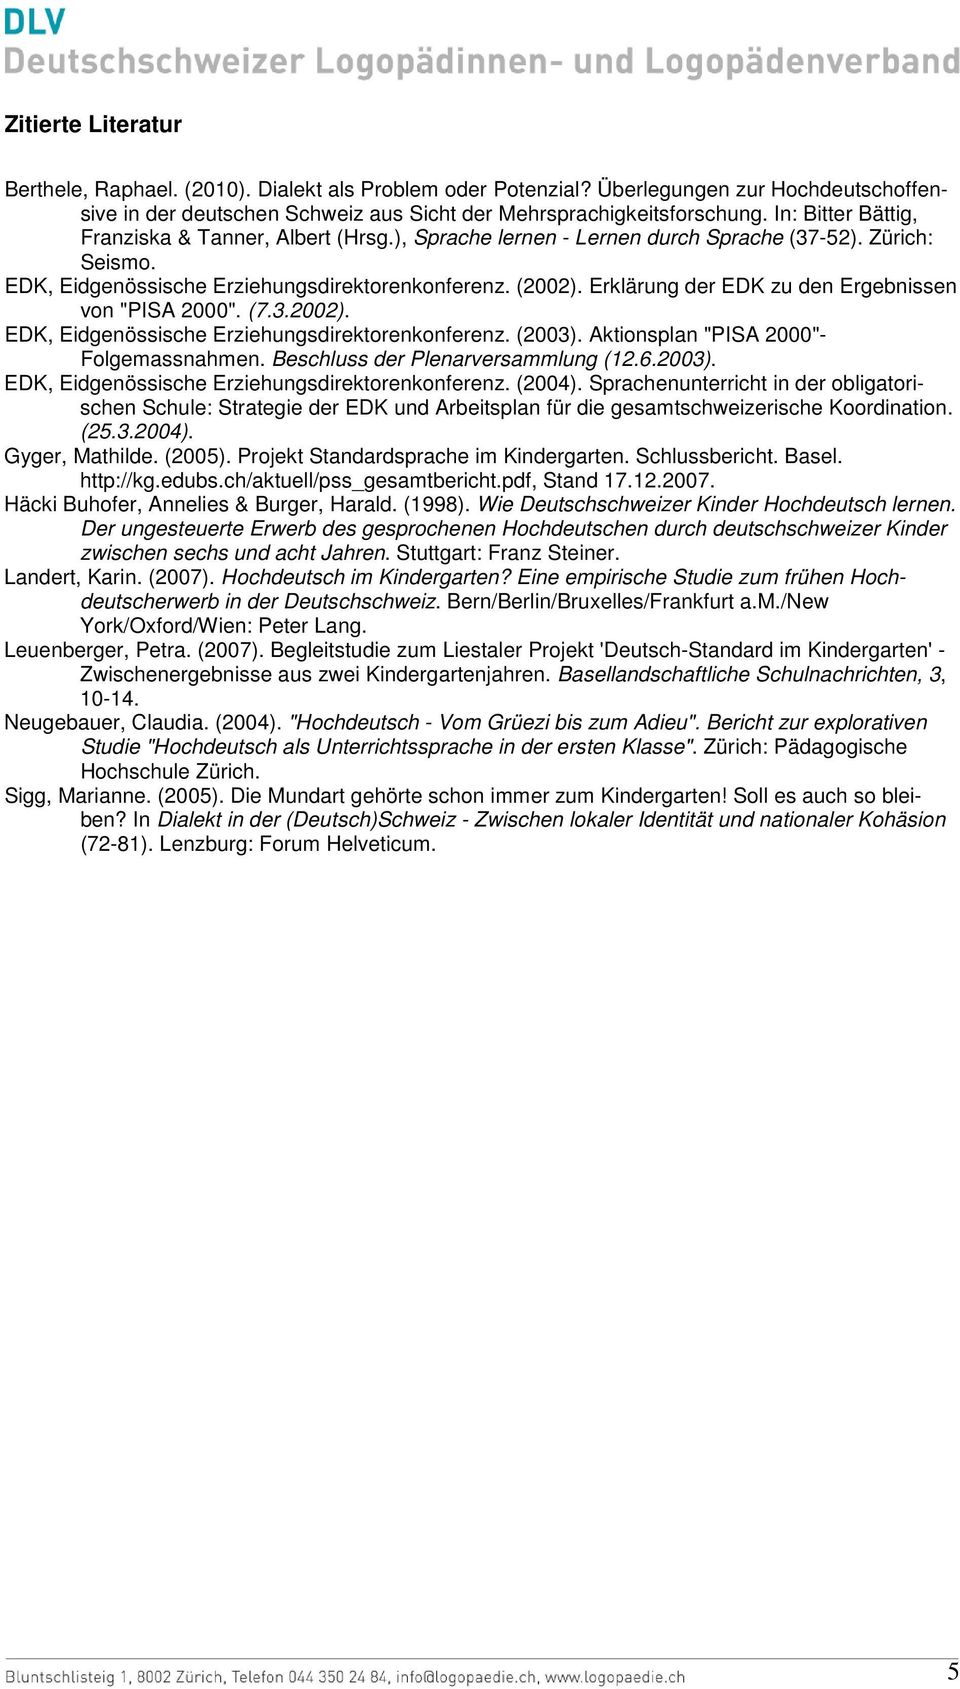 Erklärung der EDK zu den Ergebnissen von "PISA 2000". (7.3.2002). EDK, Eidgenössische Erziehungsdirektorenkonferenz. (2003). Aktionsplan "PISA 2000"- Folgemassnahmen.